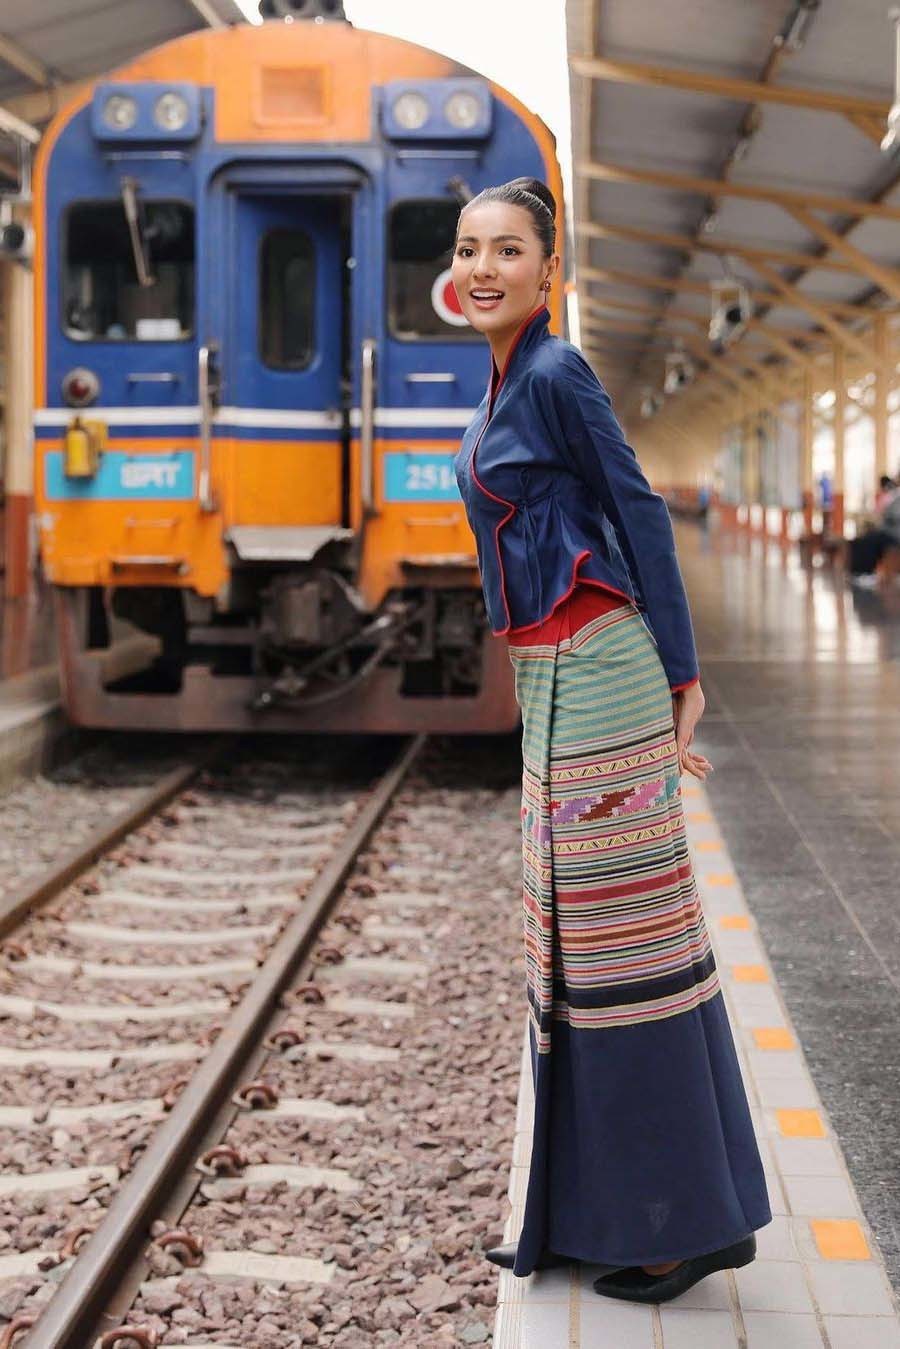 Vẻ gợi cảm của mỹ nhân 27 tuổi đăng quang Hoa hậu Thái Lan 2020